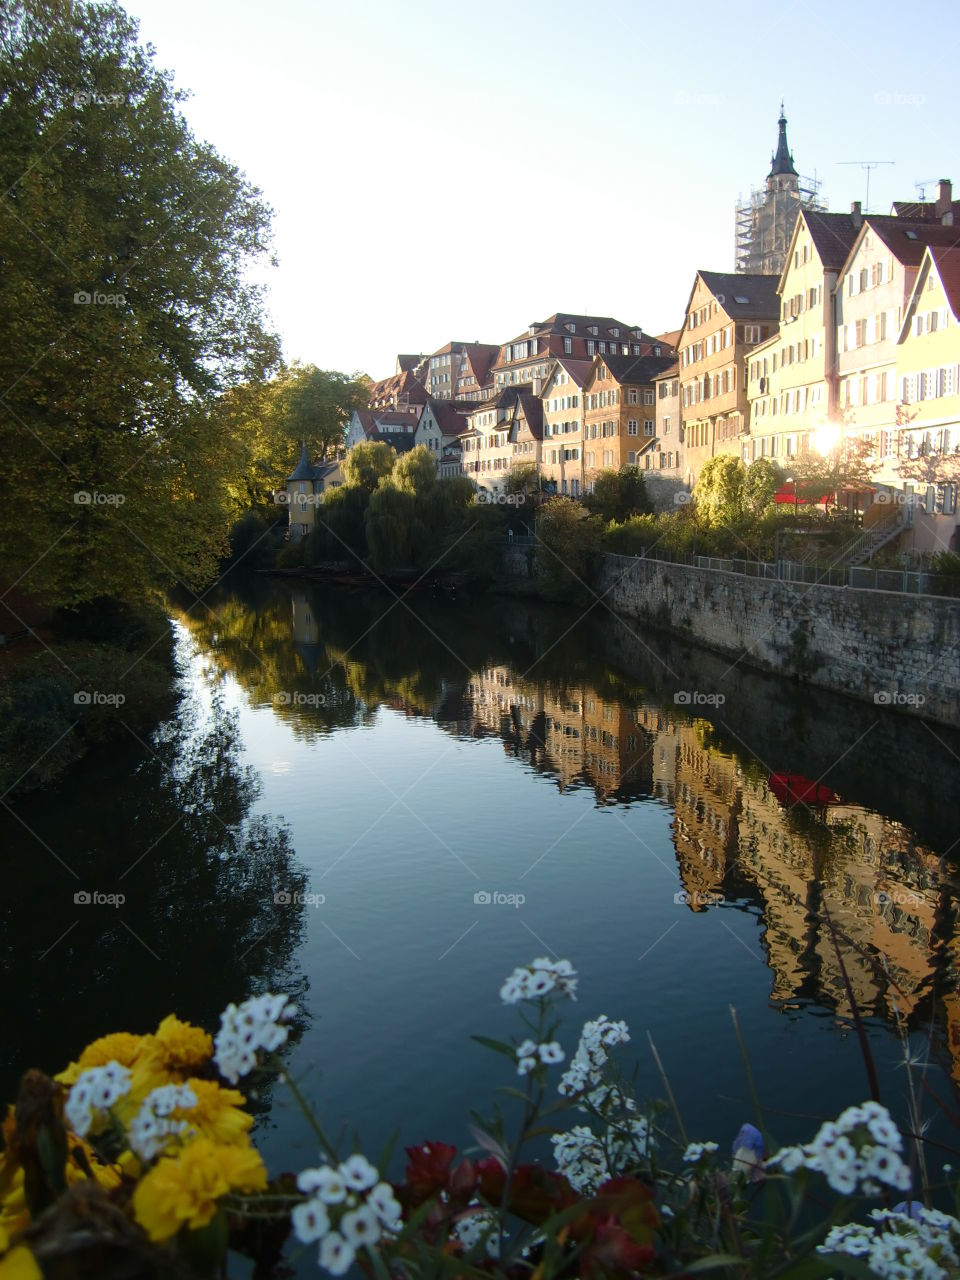 Neckar reflection